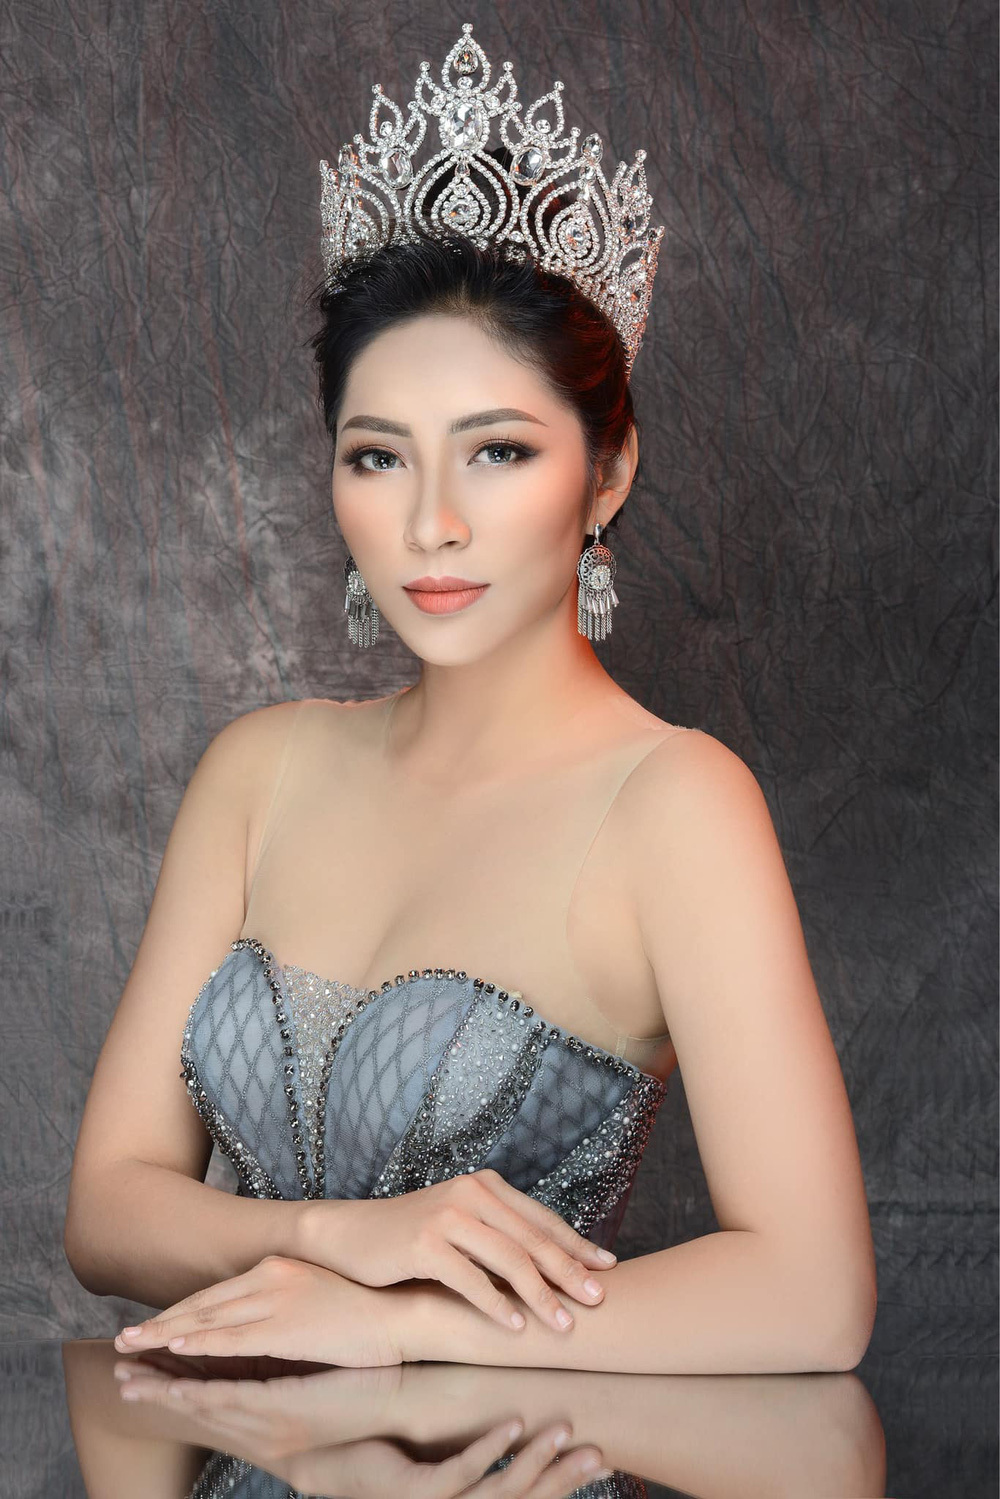 Đặng Thu Thảo từng tuyên bố hủy danh hiệu Hoa hậu Đại dương vì bất bình Hoa hậu kế nhiệm Lê Âu Ngân Anh